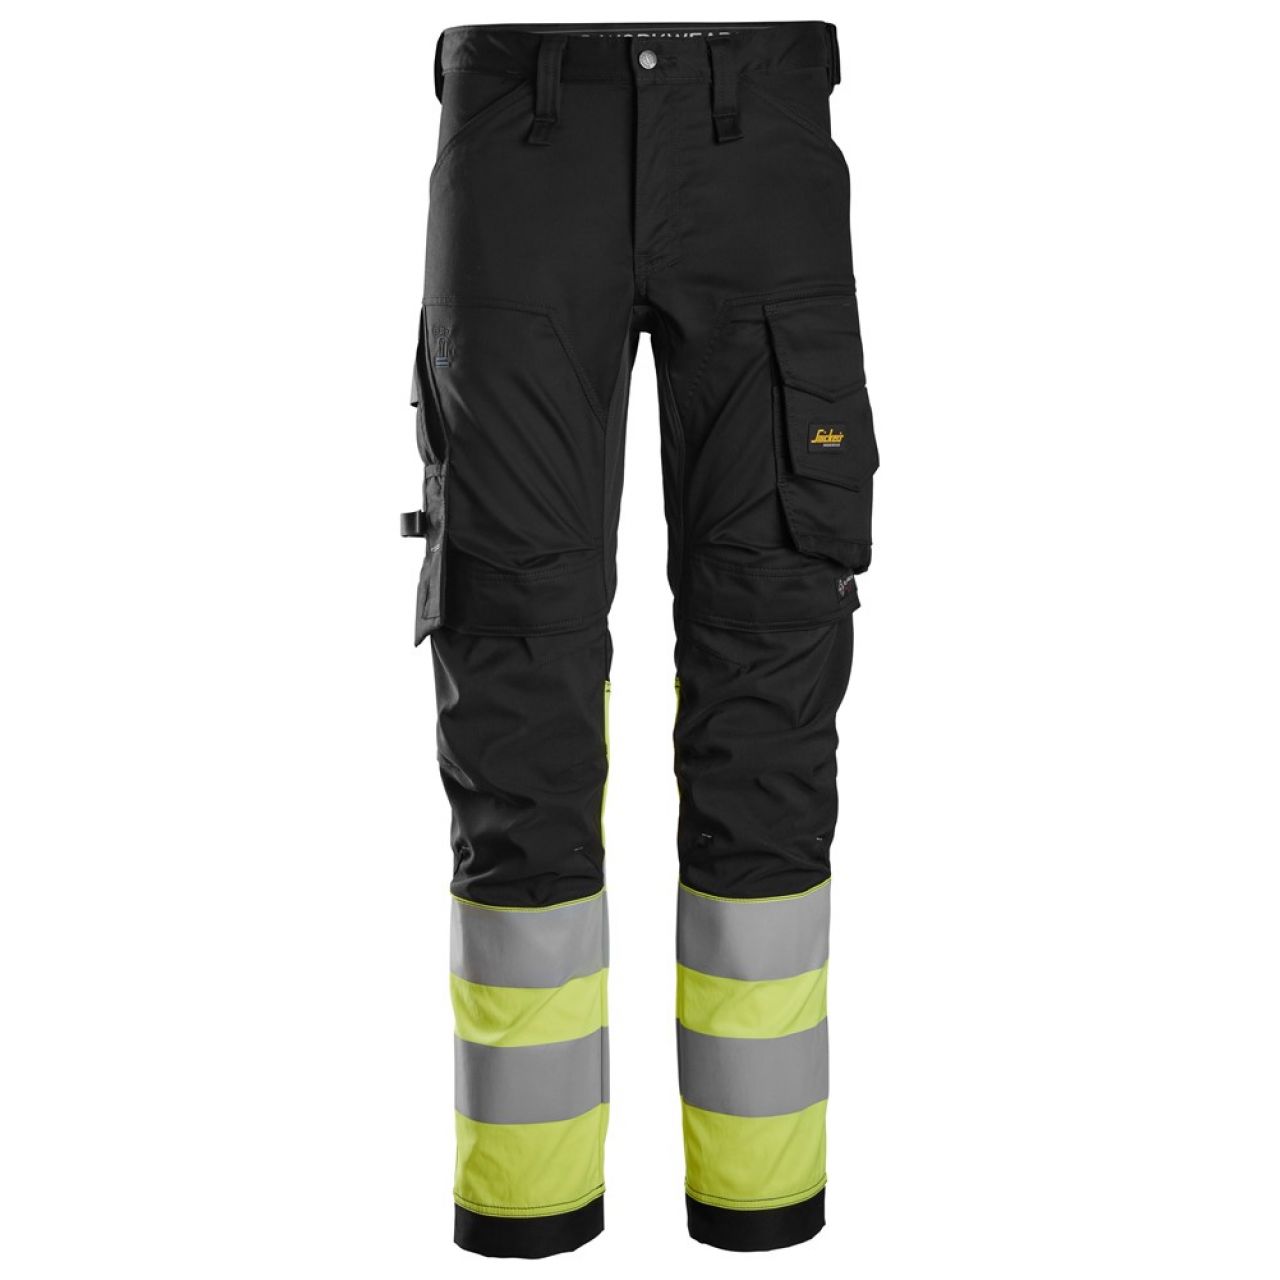 6334 Pantalones largos de trabajo elásticos de alta visibilidad clase 1 negro-amarillo talla 48